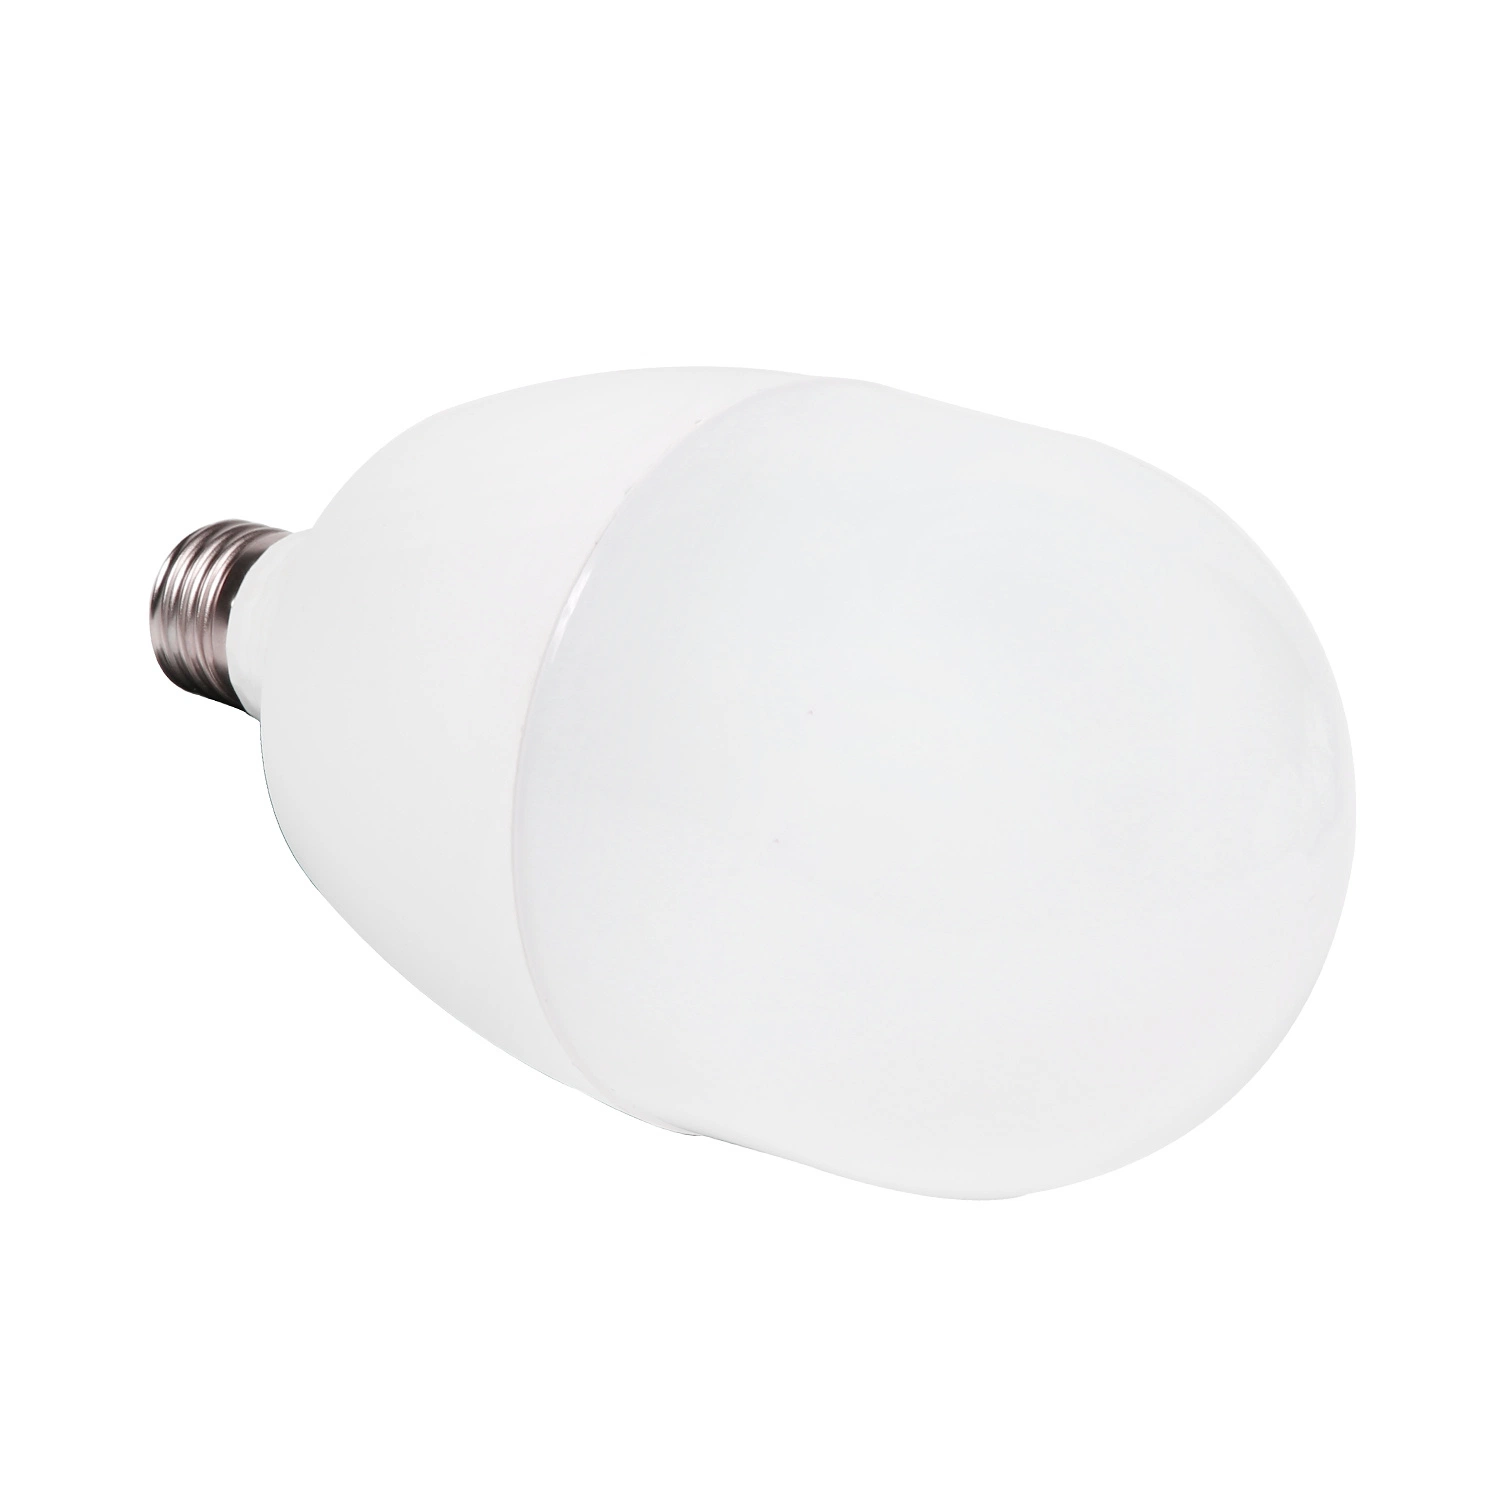 CE RoHS Elegant Design 15W T70 Al PBT Fire-Proof LED Bulb Light New LED Lighting